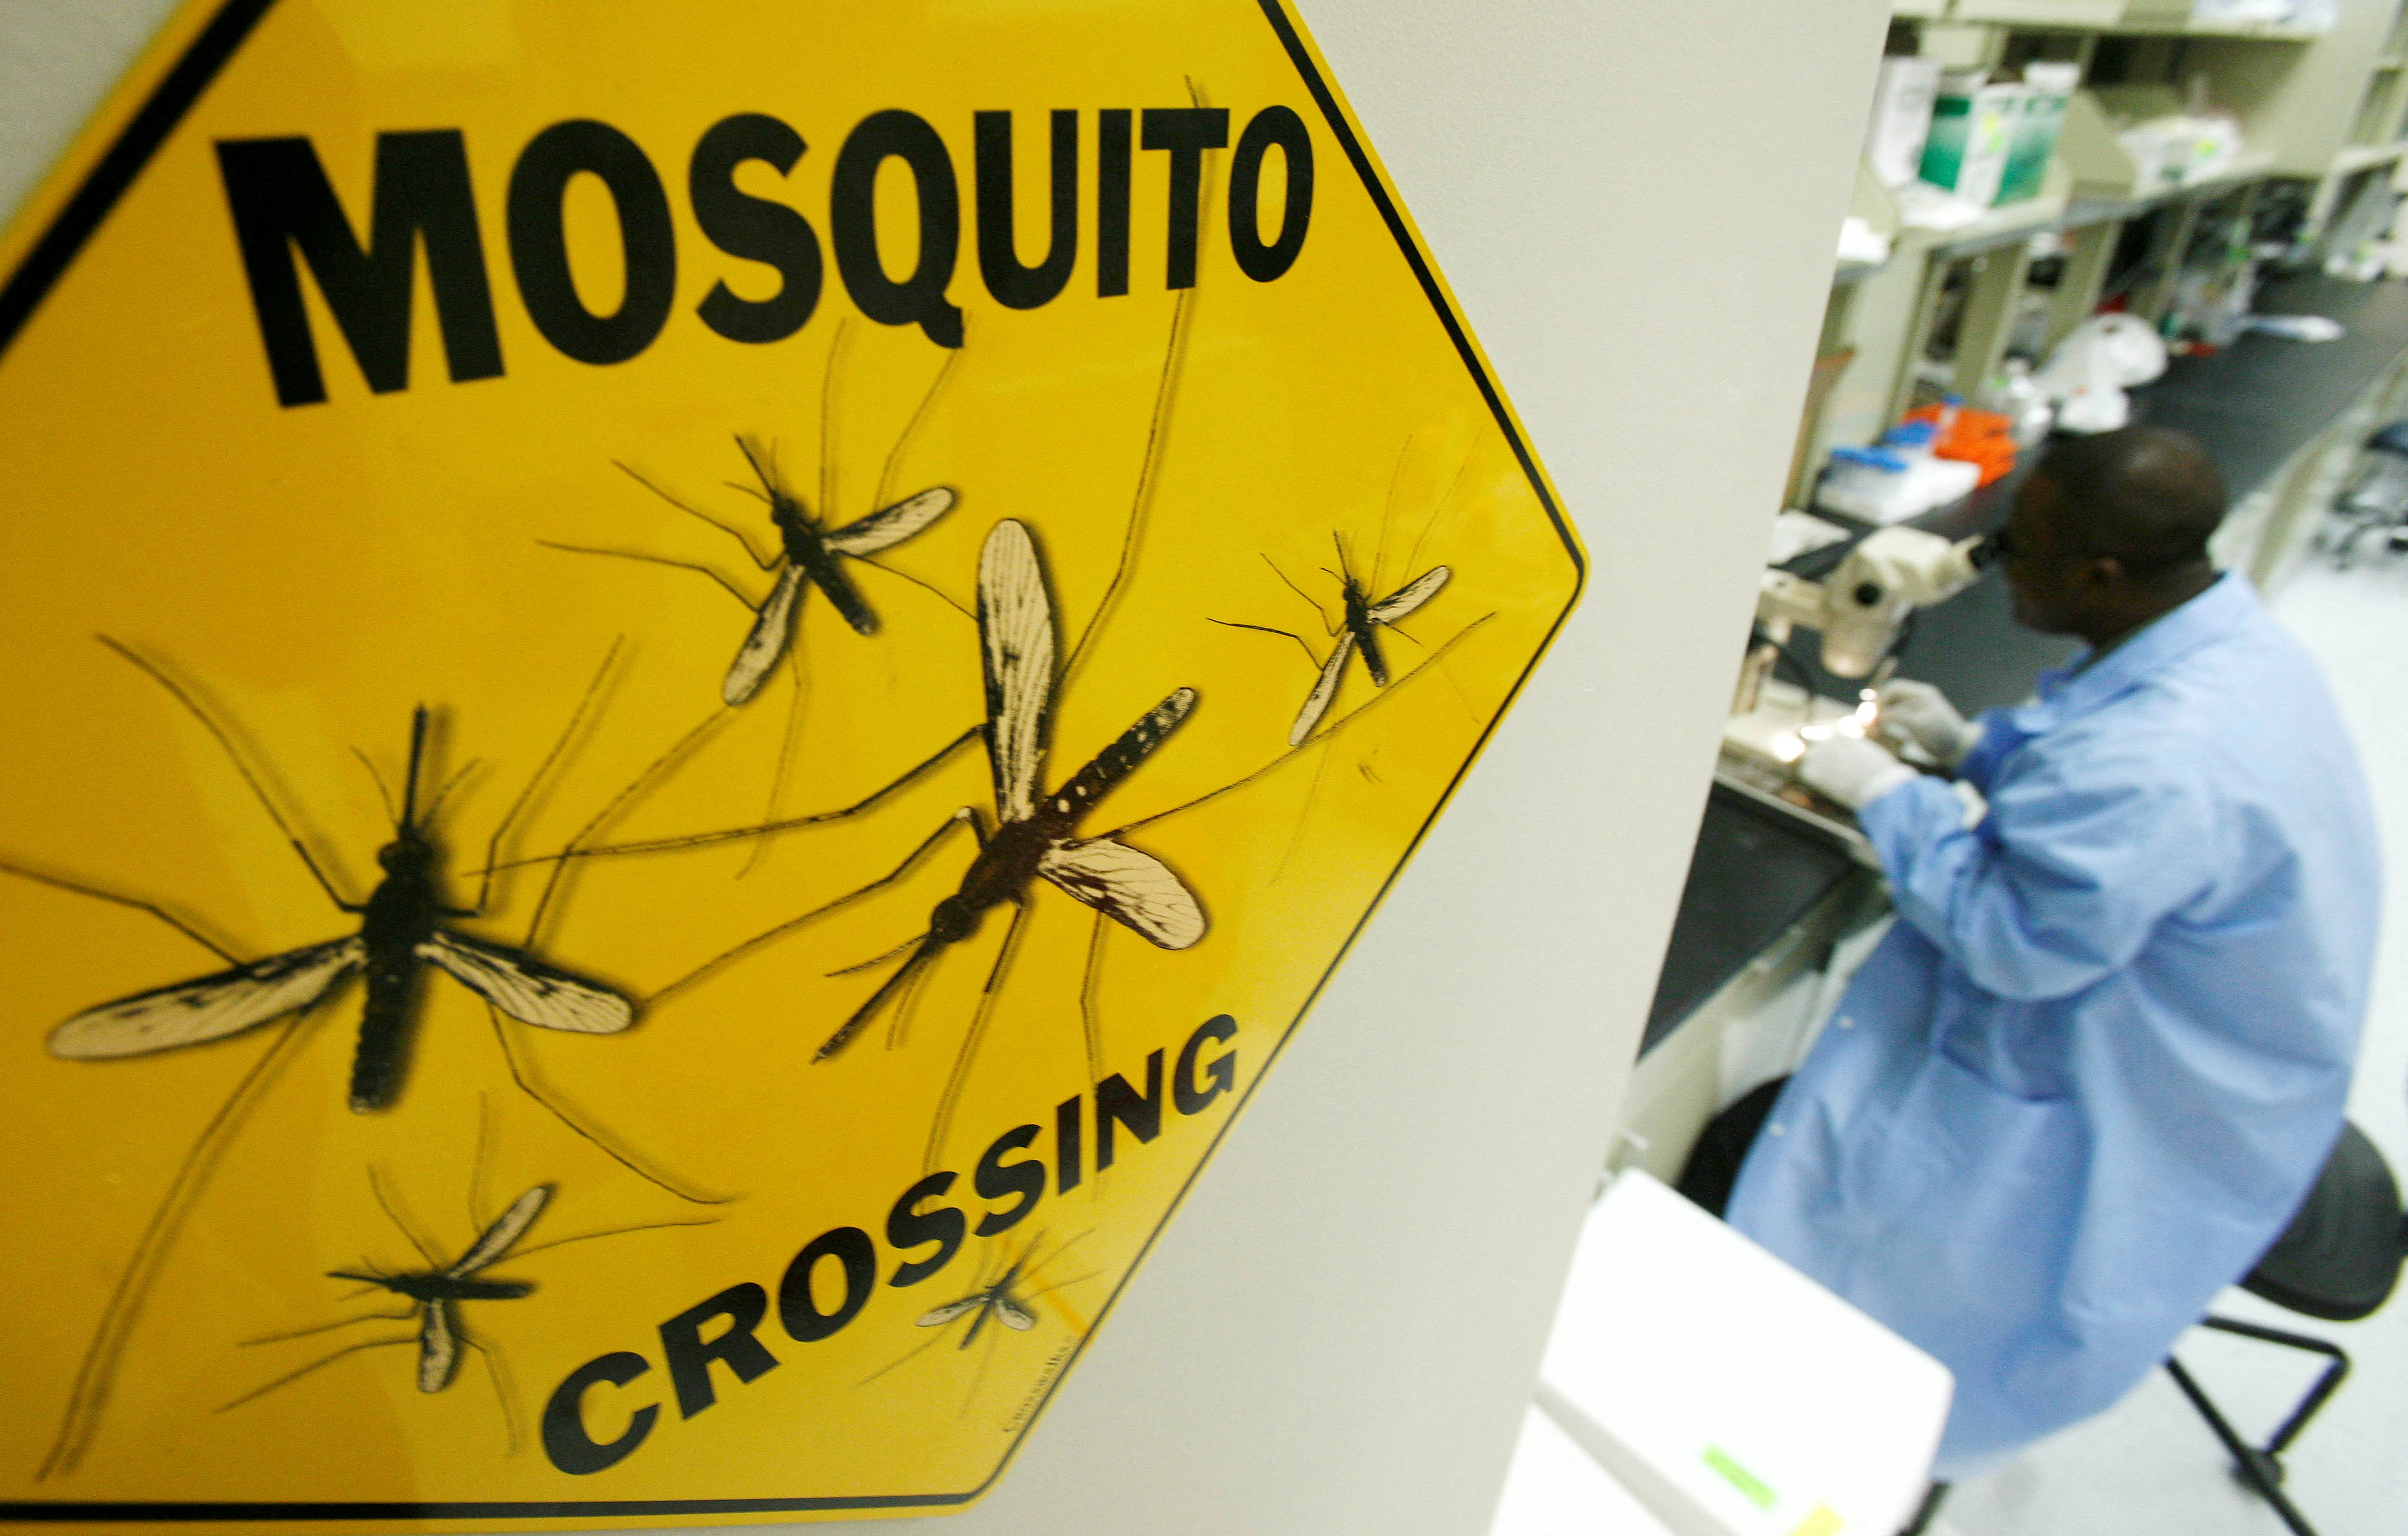 Los científicos estudian varias vacunas y formas de esterilizar a los mosquitos que transmiten el dengue y otras enfermedades